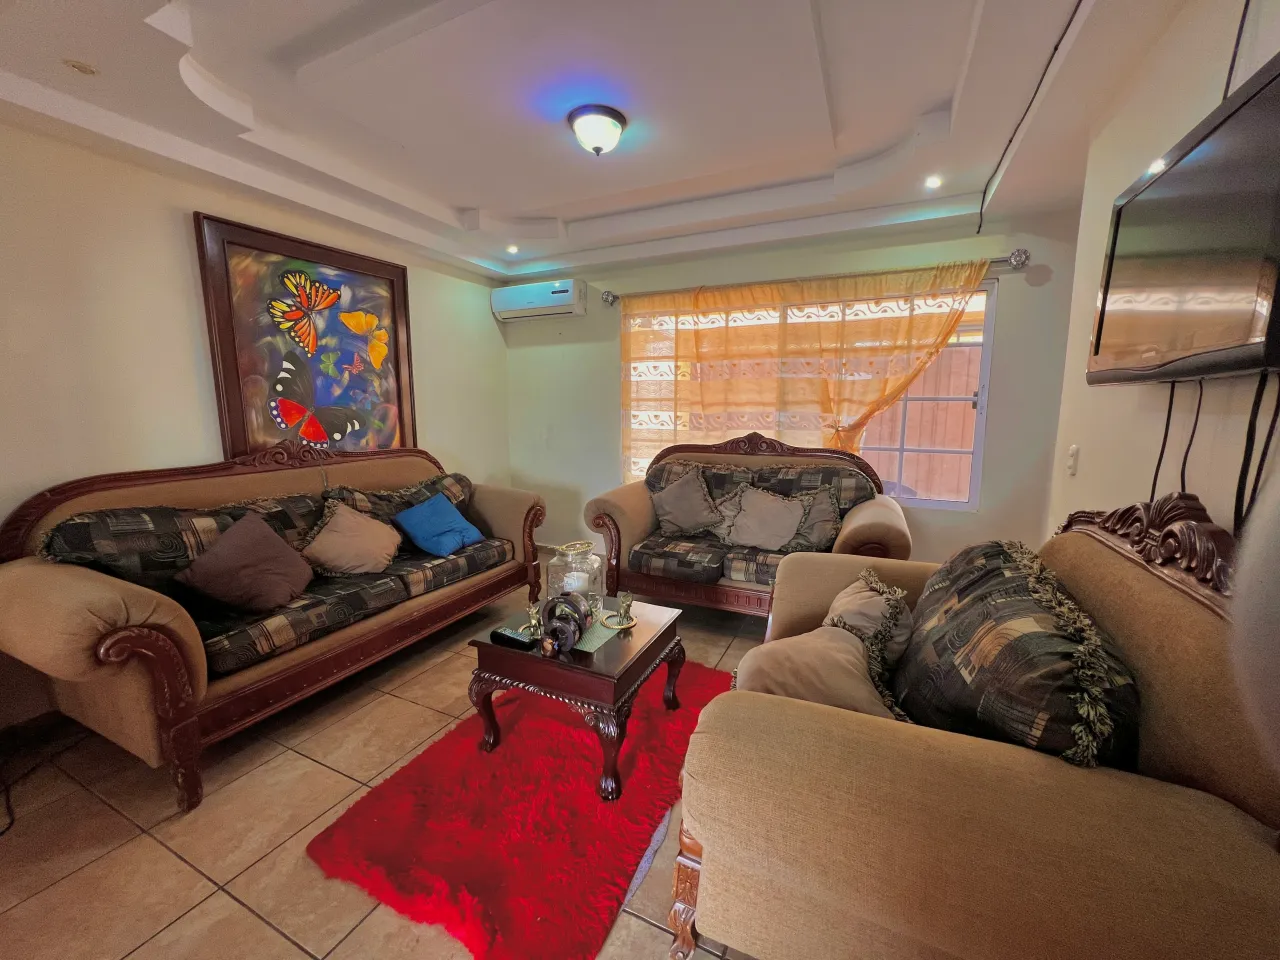 La sala cuenta con un espacio considerable para que puedas ajustarlo a tu gusto, con piso de cerámica, aire acondiconado y una ventana corrediza que permite la entra de luz natural.